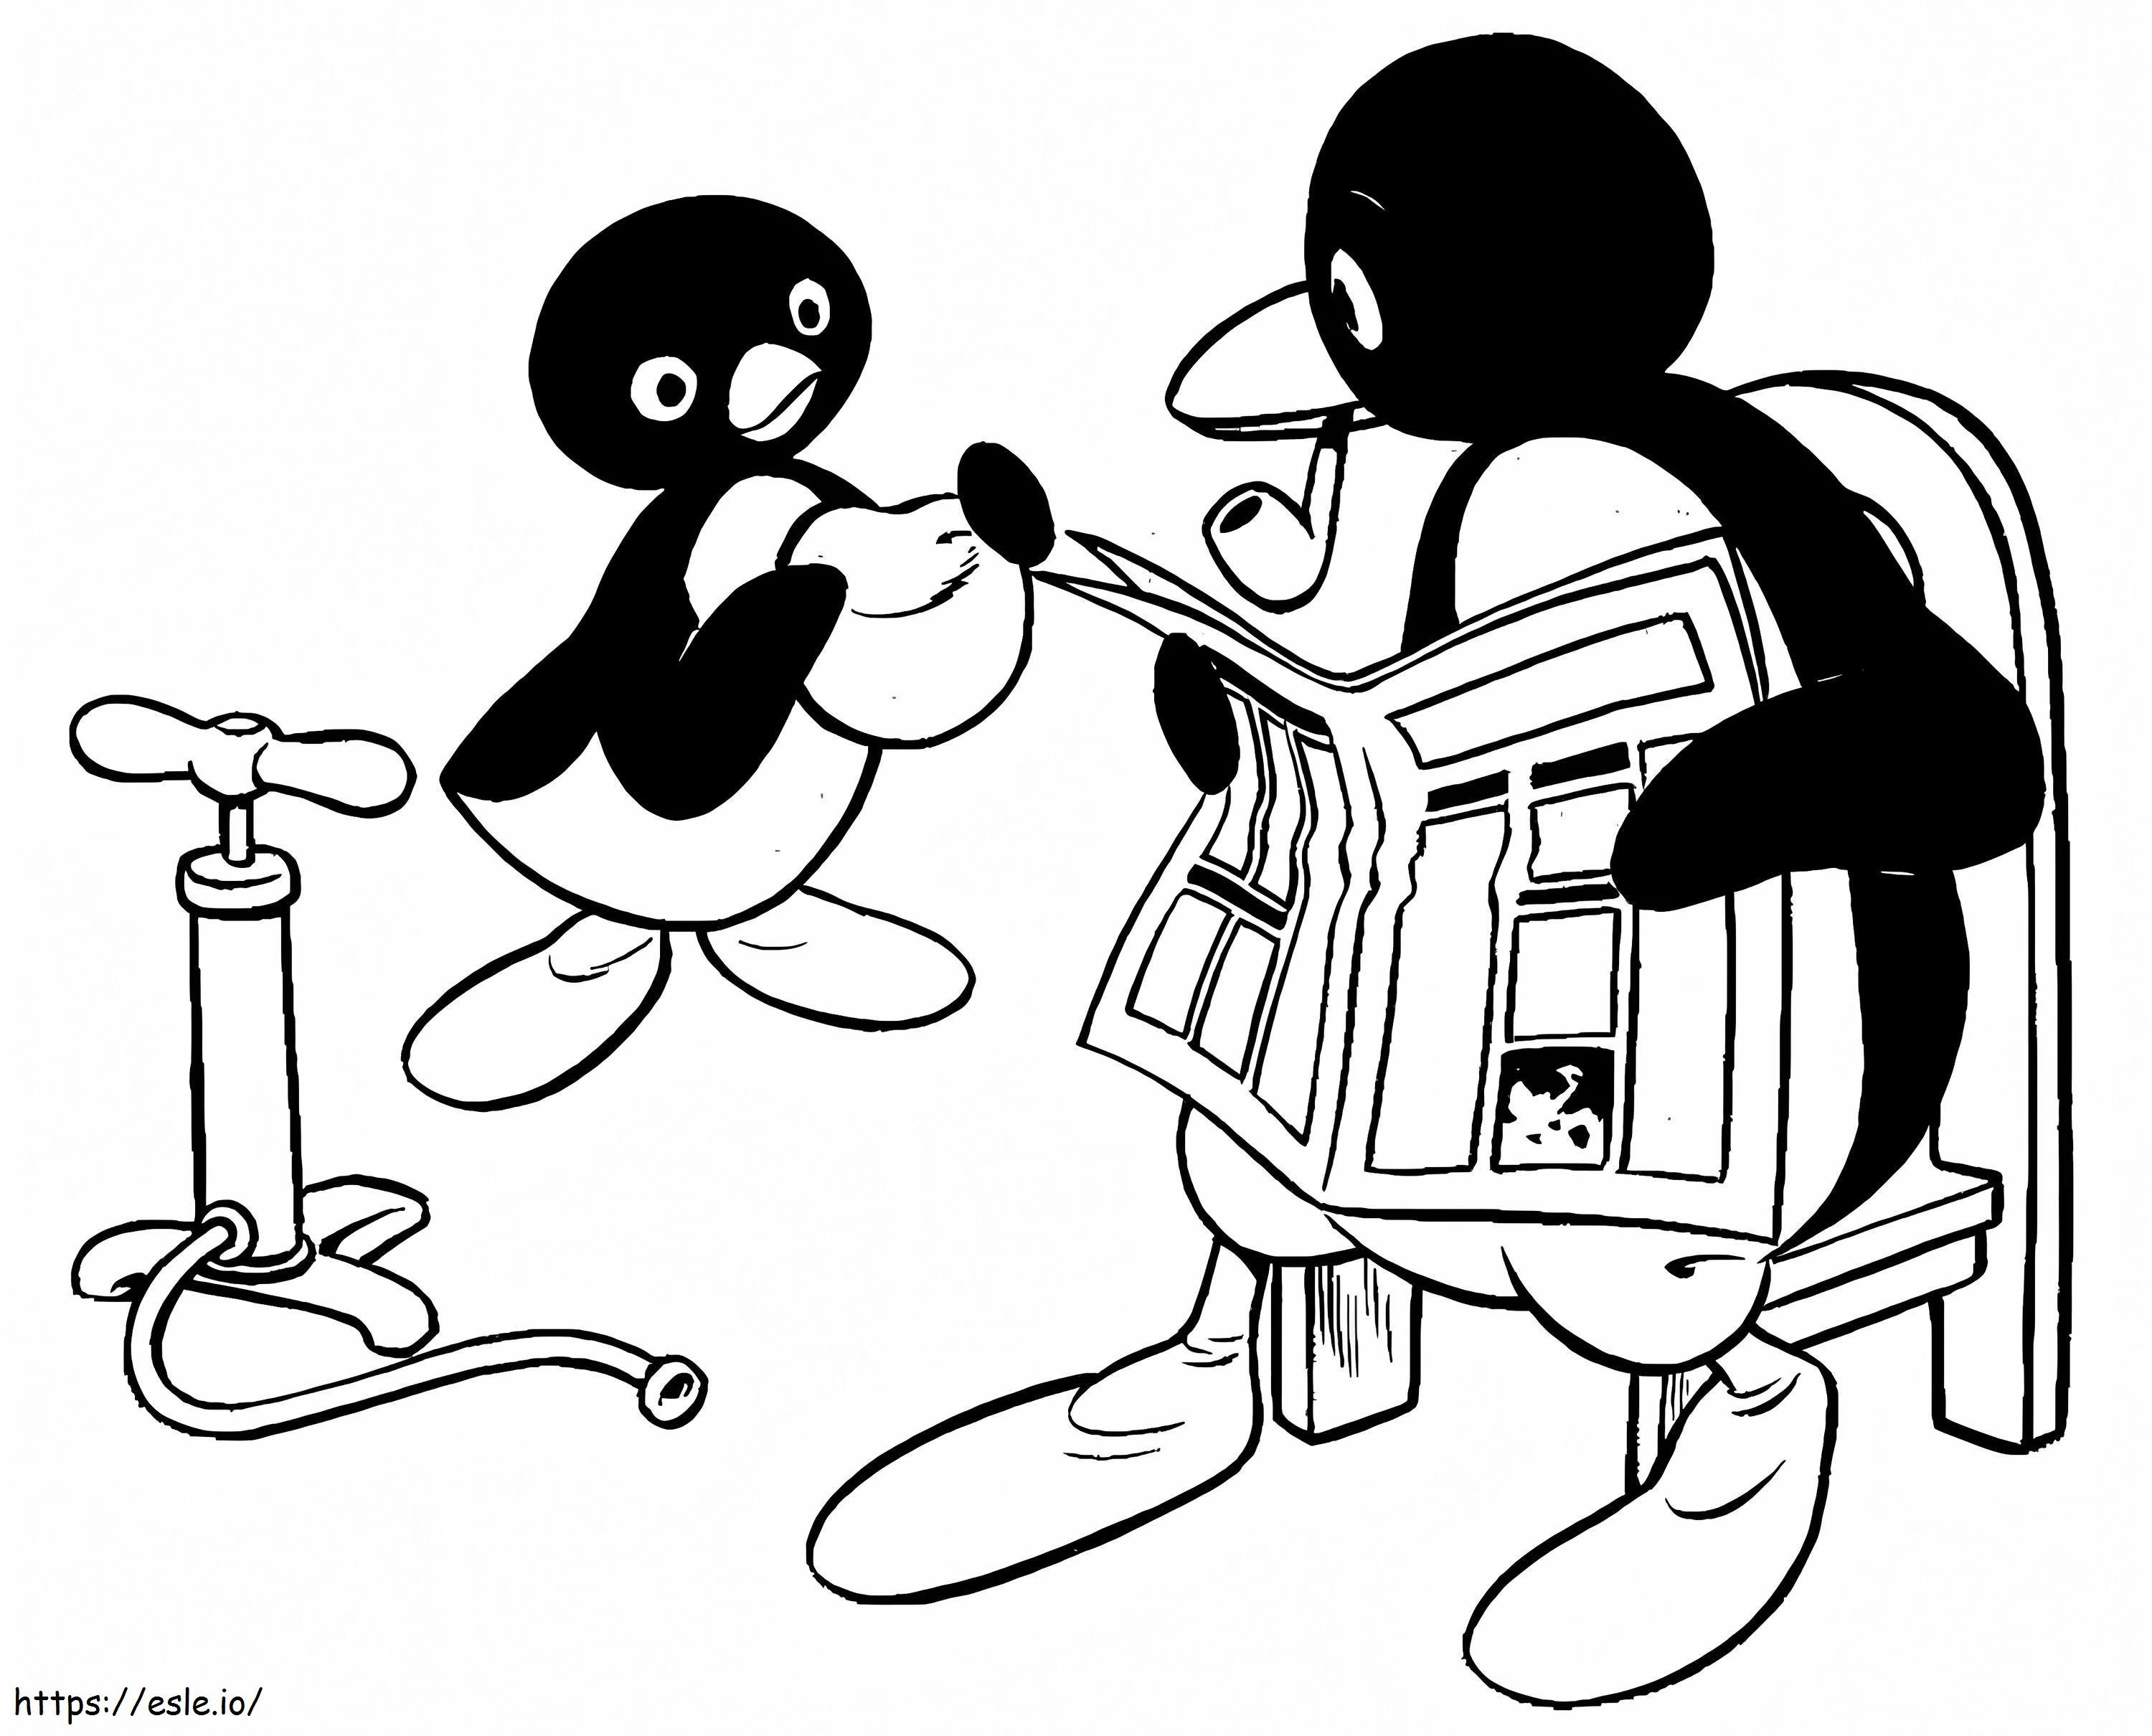 Pingu e padre da colorare